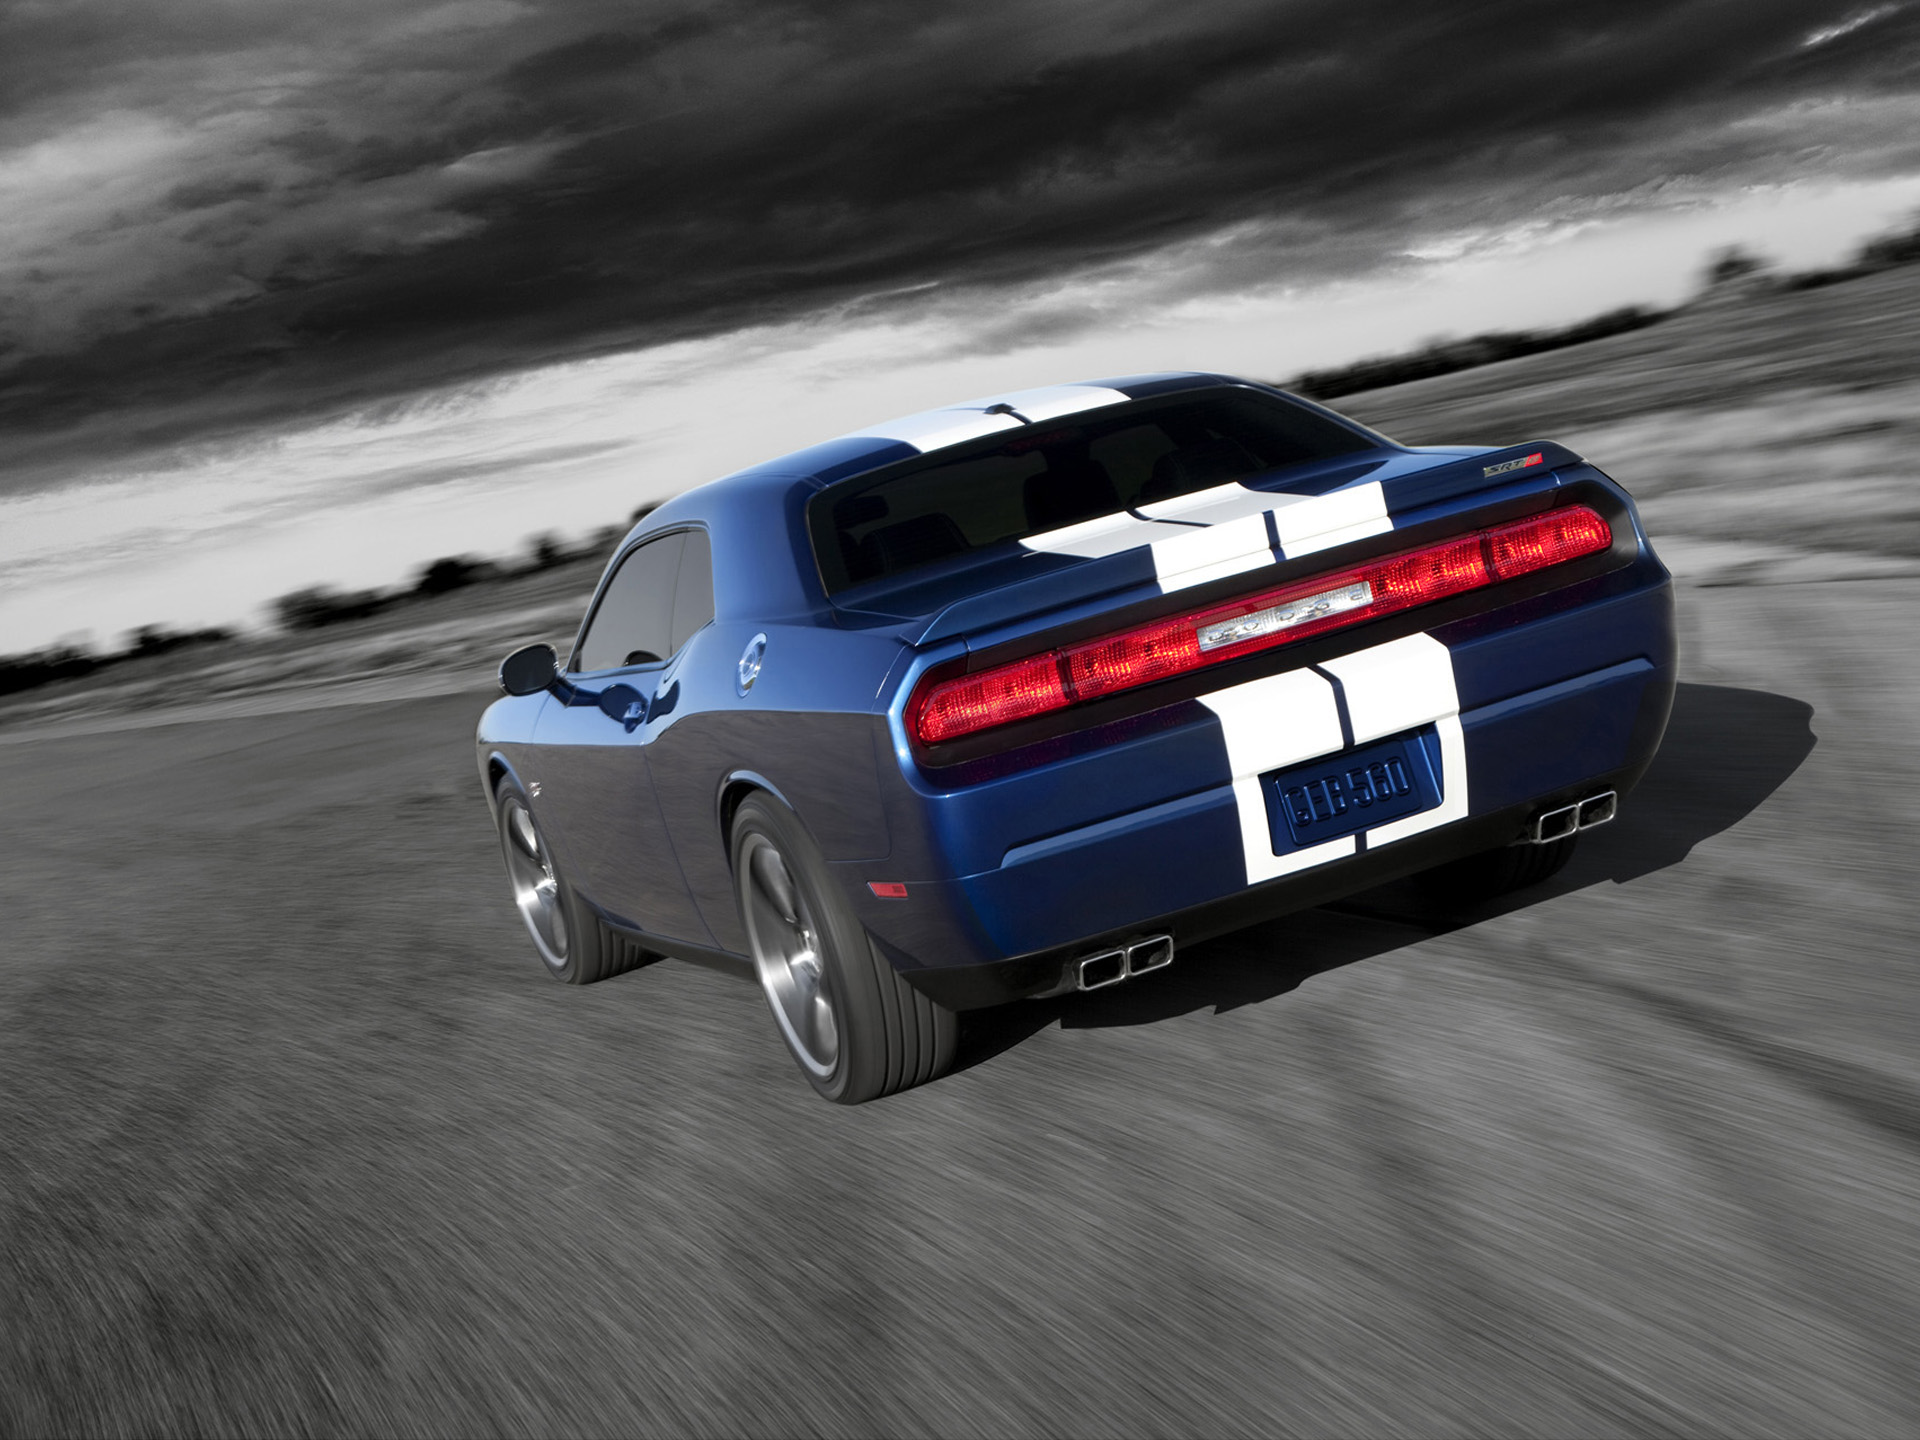 Free download wallpaper Dodge Challenger, Dodge, Vehicles, Dodge Challenger Srt8 on your PC desktop